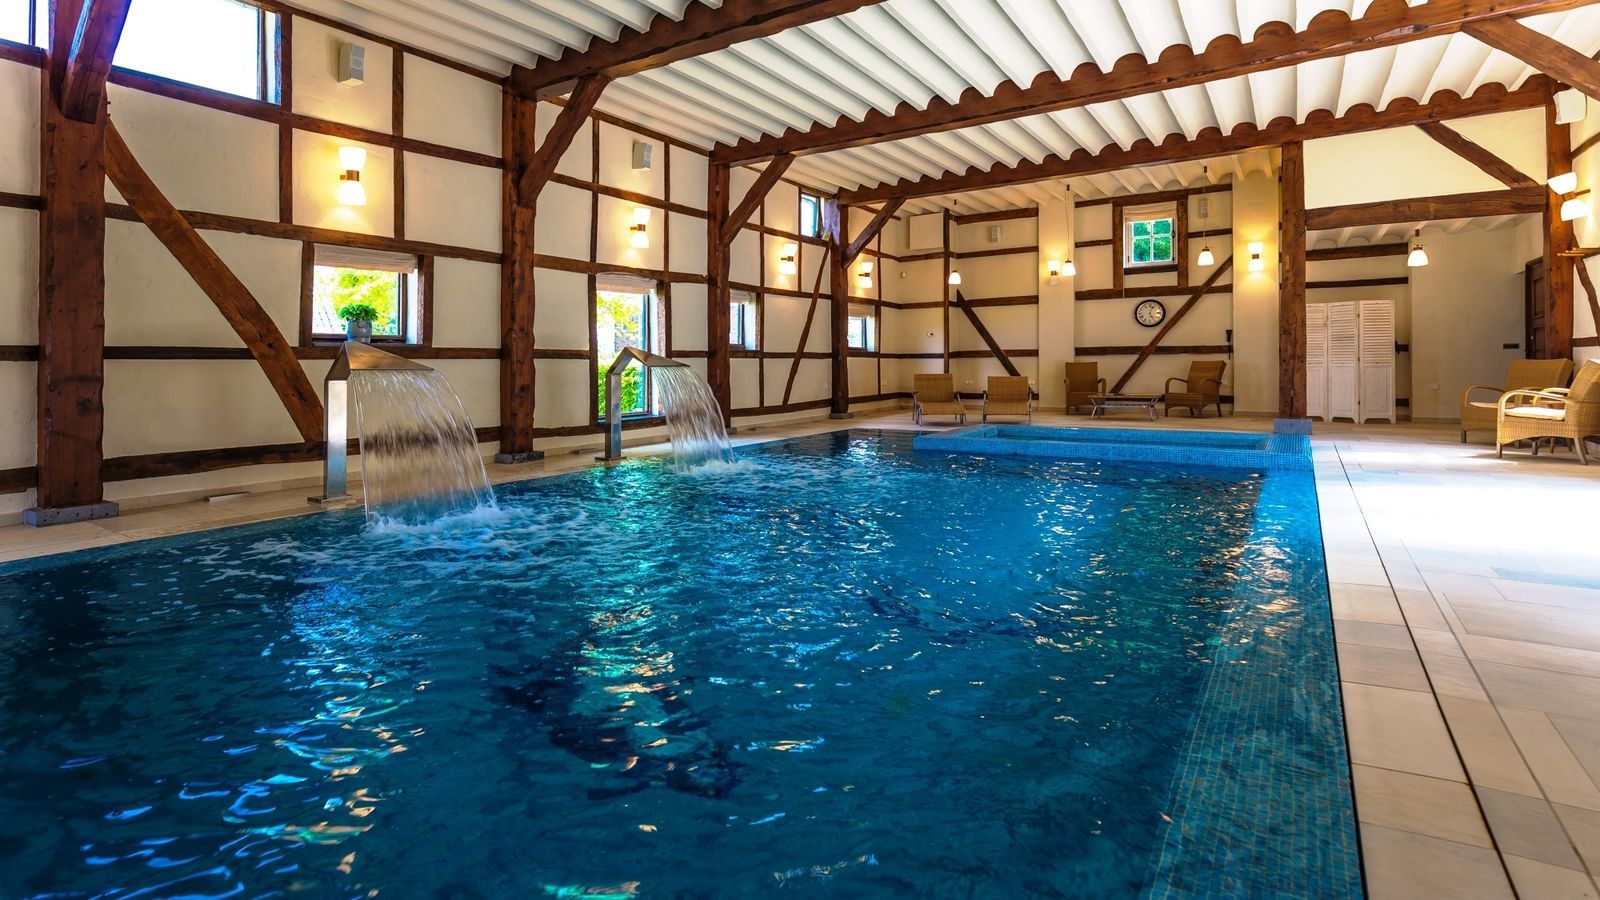 Villapparte-Special Villa's-Carrehoeve A-Gen-Beuke-luxe vakantiehuis voor 20 personen-binnen zwembad-groepsaccommodatie-Zuid Limburg-zwembad